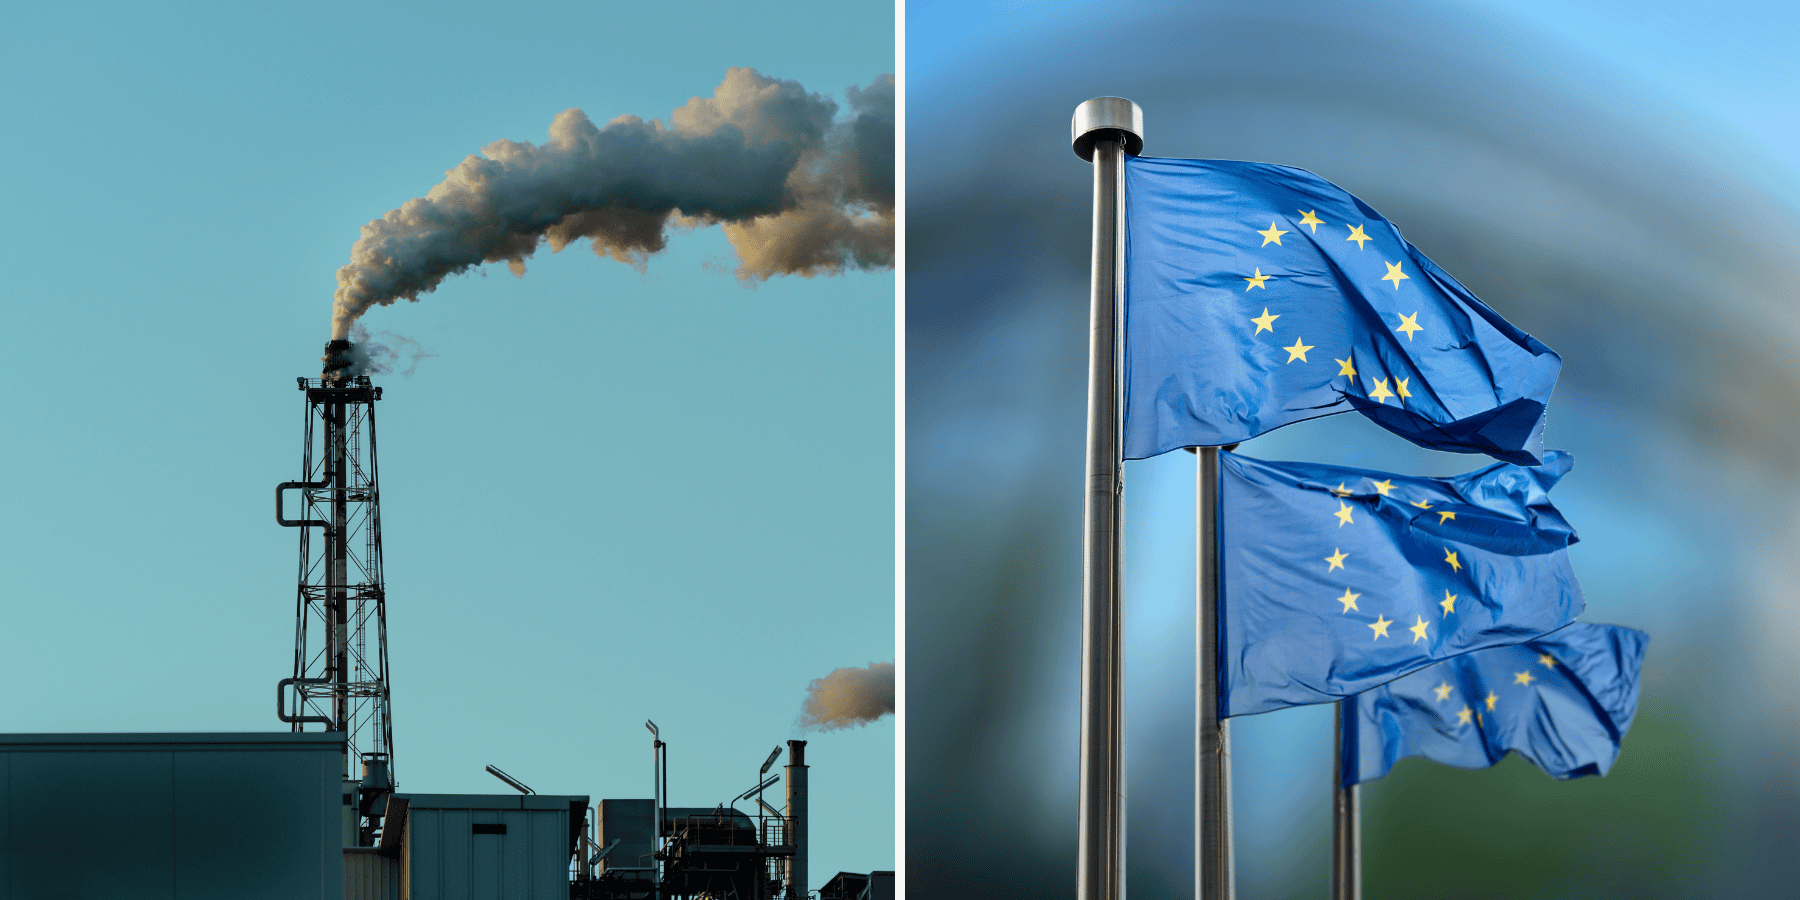 Rekordowy spadek emisji CO2. Unia Europejska na dobrej drodze